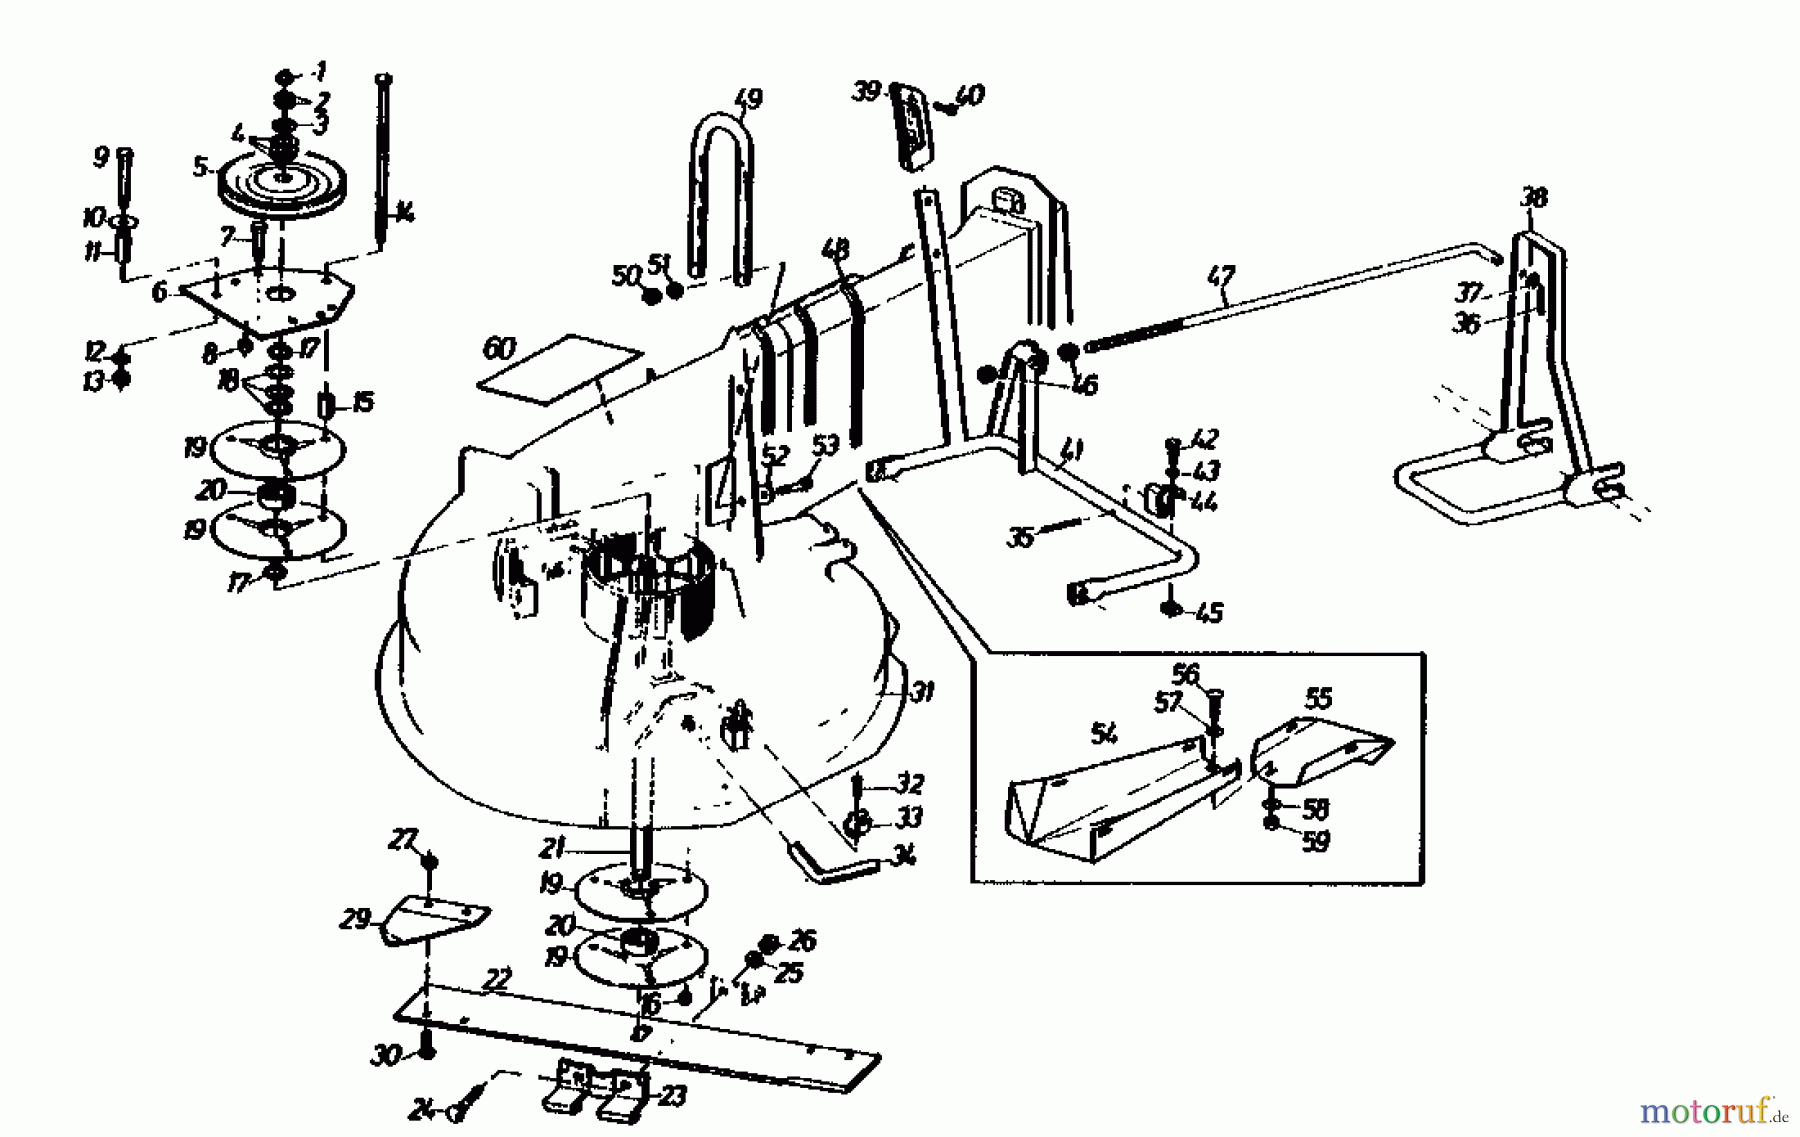  Gutbrod Rasentraktoren Sprint 1000 E 02840.04  (1990) Mähwerk 66cm